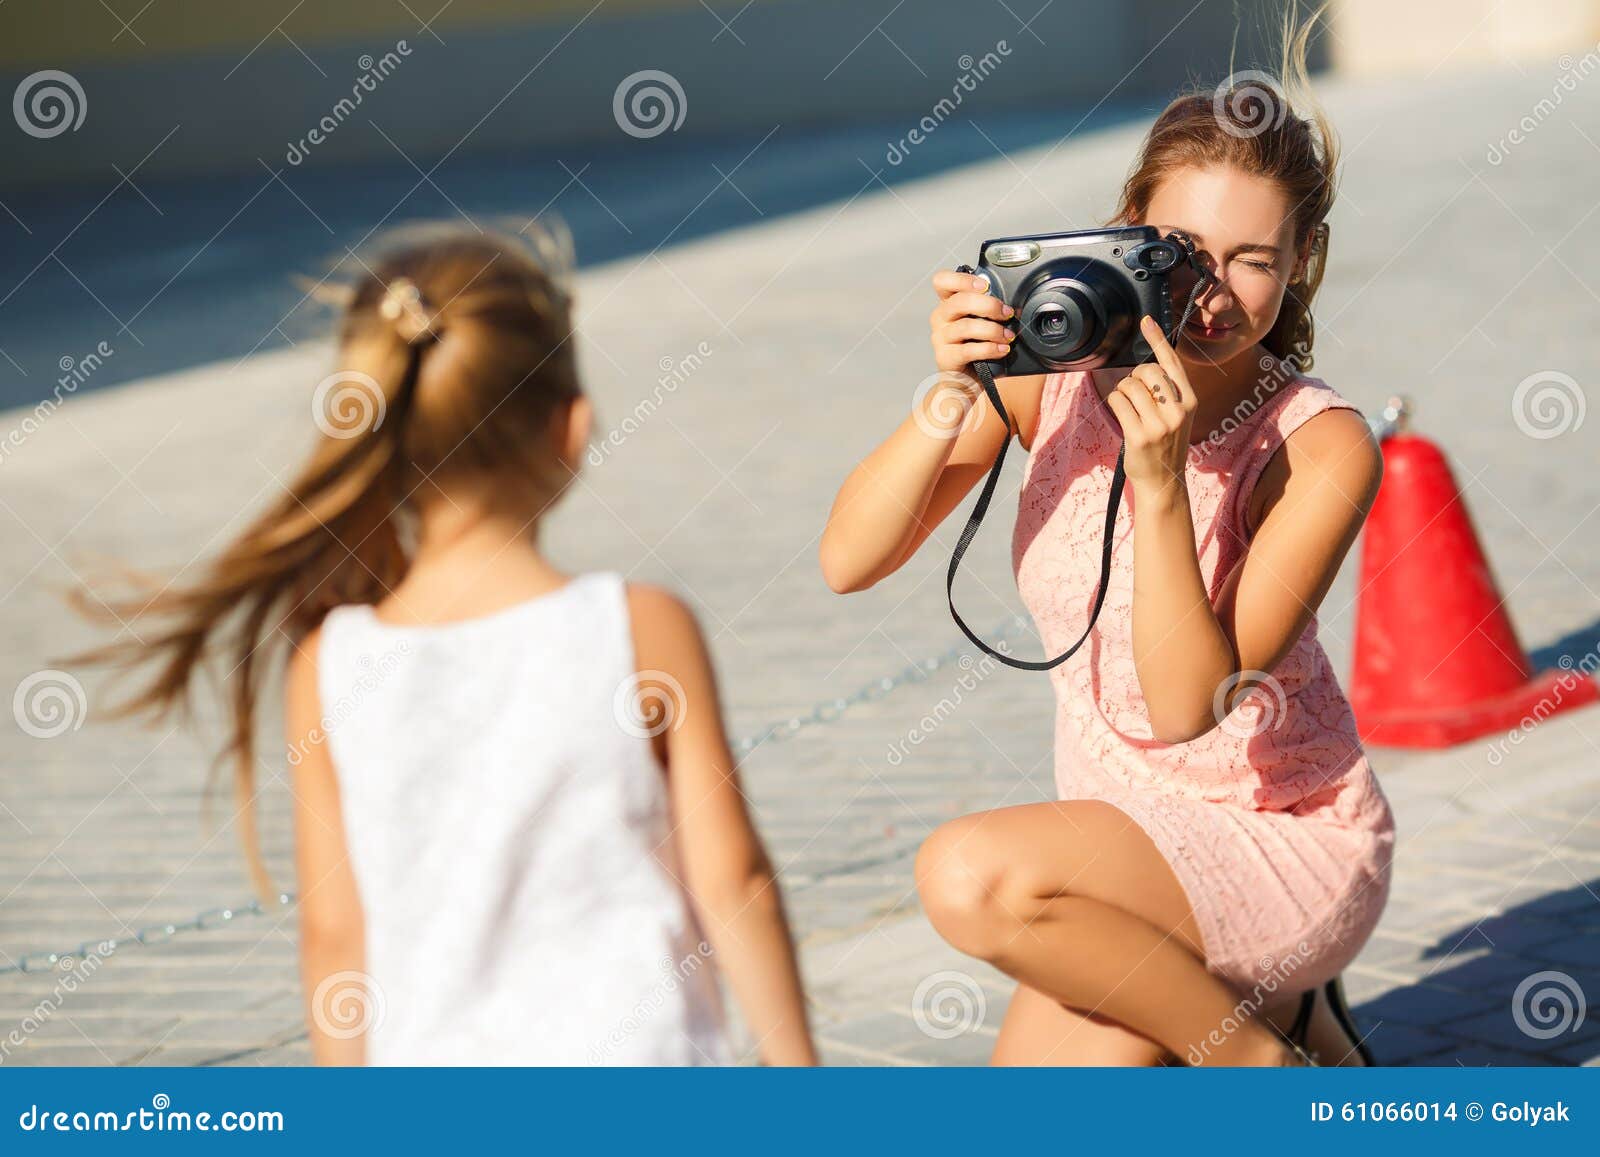 Мама и дочь веб камера. Мама фотографирует. Девушка фотографирует дочь. Мама с фотоаппаратом и дочка. Фотографировала свою дочь женщина фотограф.